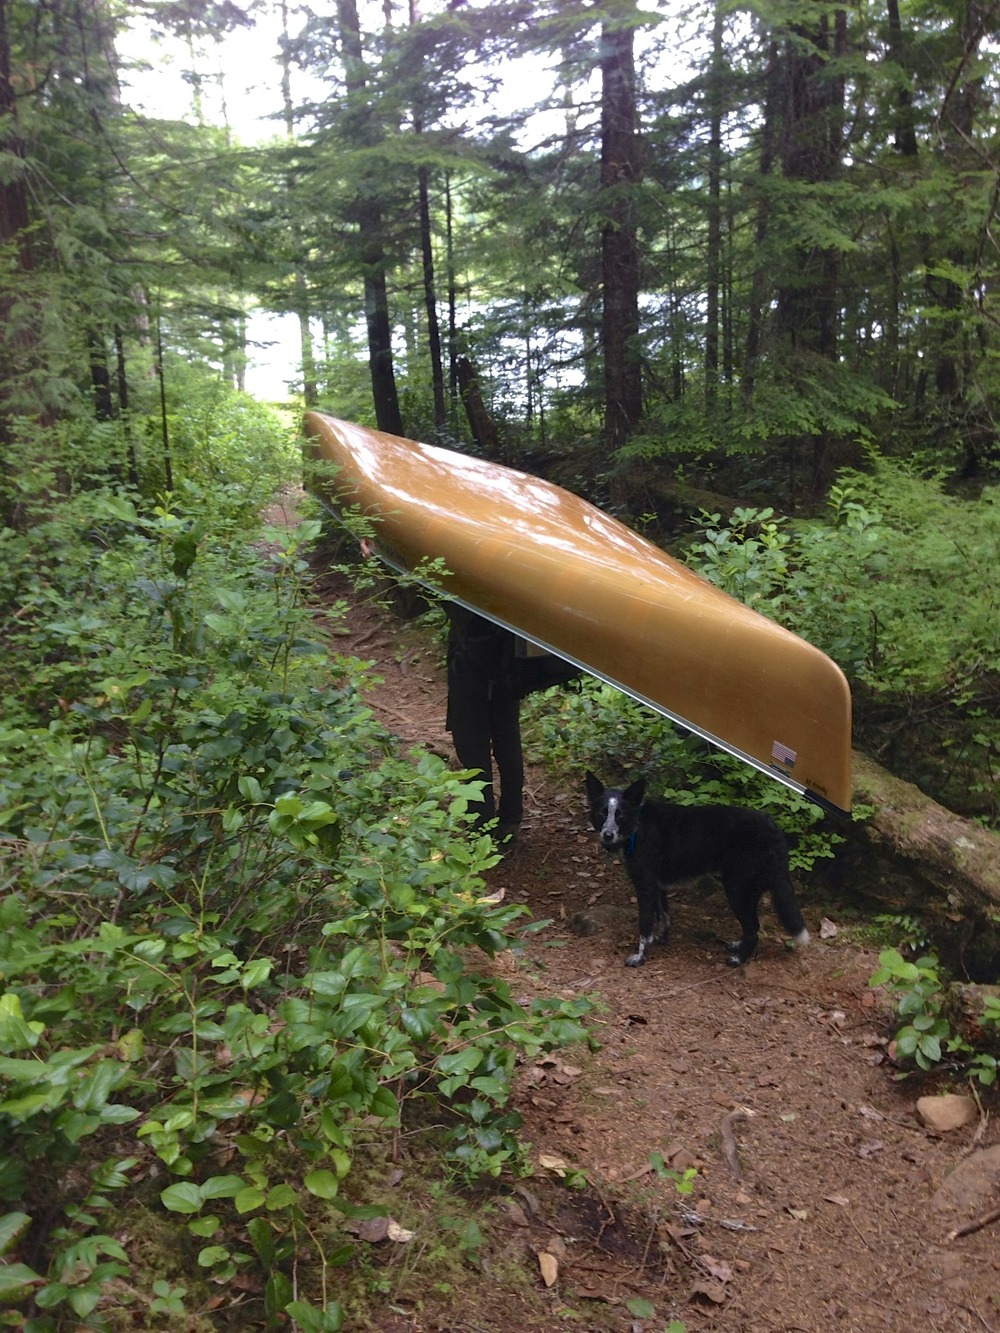 Tucker herding the canoe